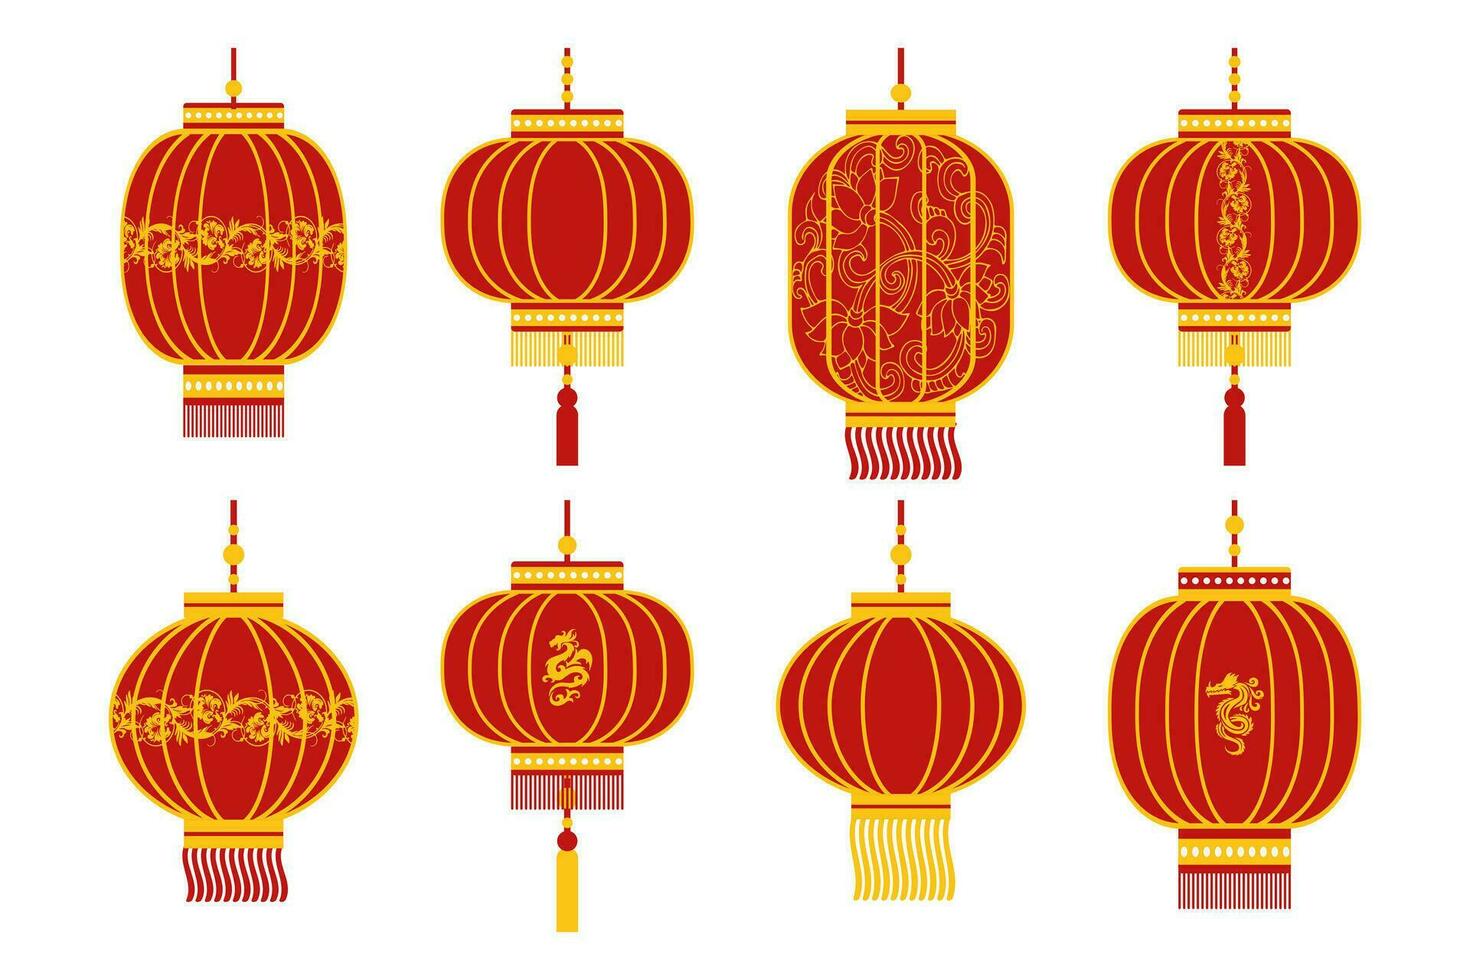 conjunto de lanternas chinesas vermelhas coloridas com dragões dourados e ornamentos. elementos de decoração, vetor